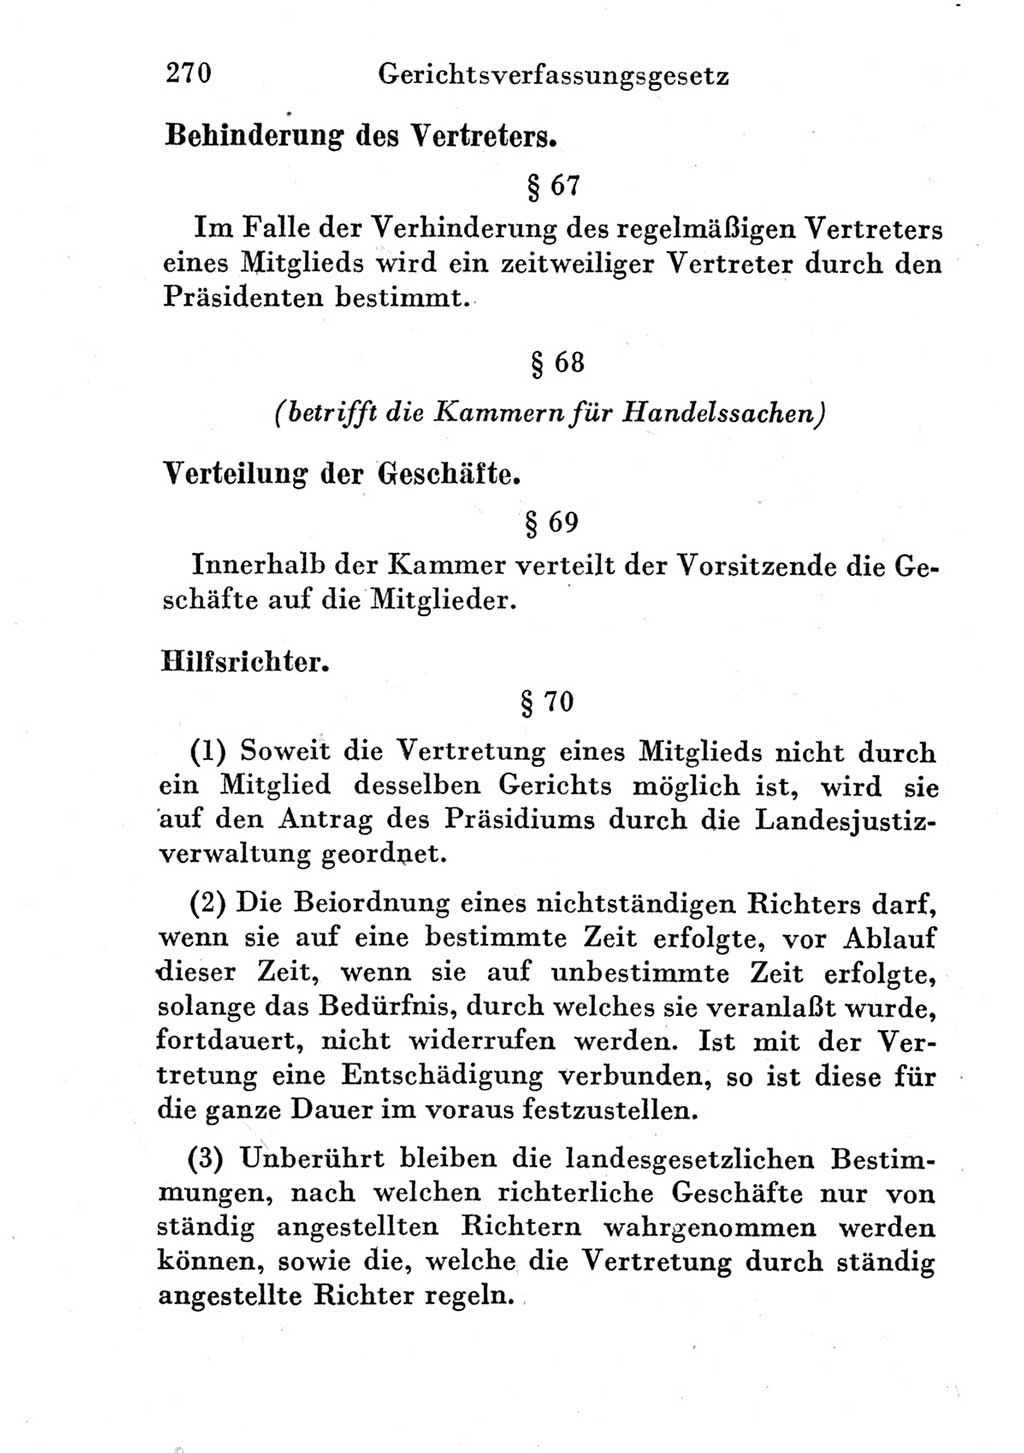 Strafprozeßordnung (StPO), Gerichtsverfassungsgesetz (GVG) und zahlreiche Nebengesetze der Deutschen Demokratischen Republik (DDR) 1950, Seite 270 (StPO GVG Ges. DDR 1950, S. 270)